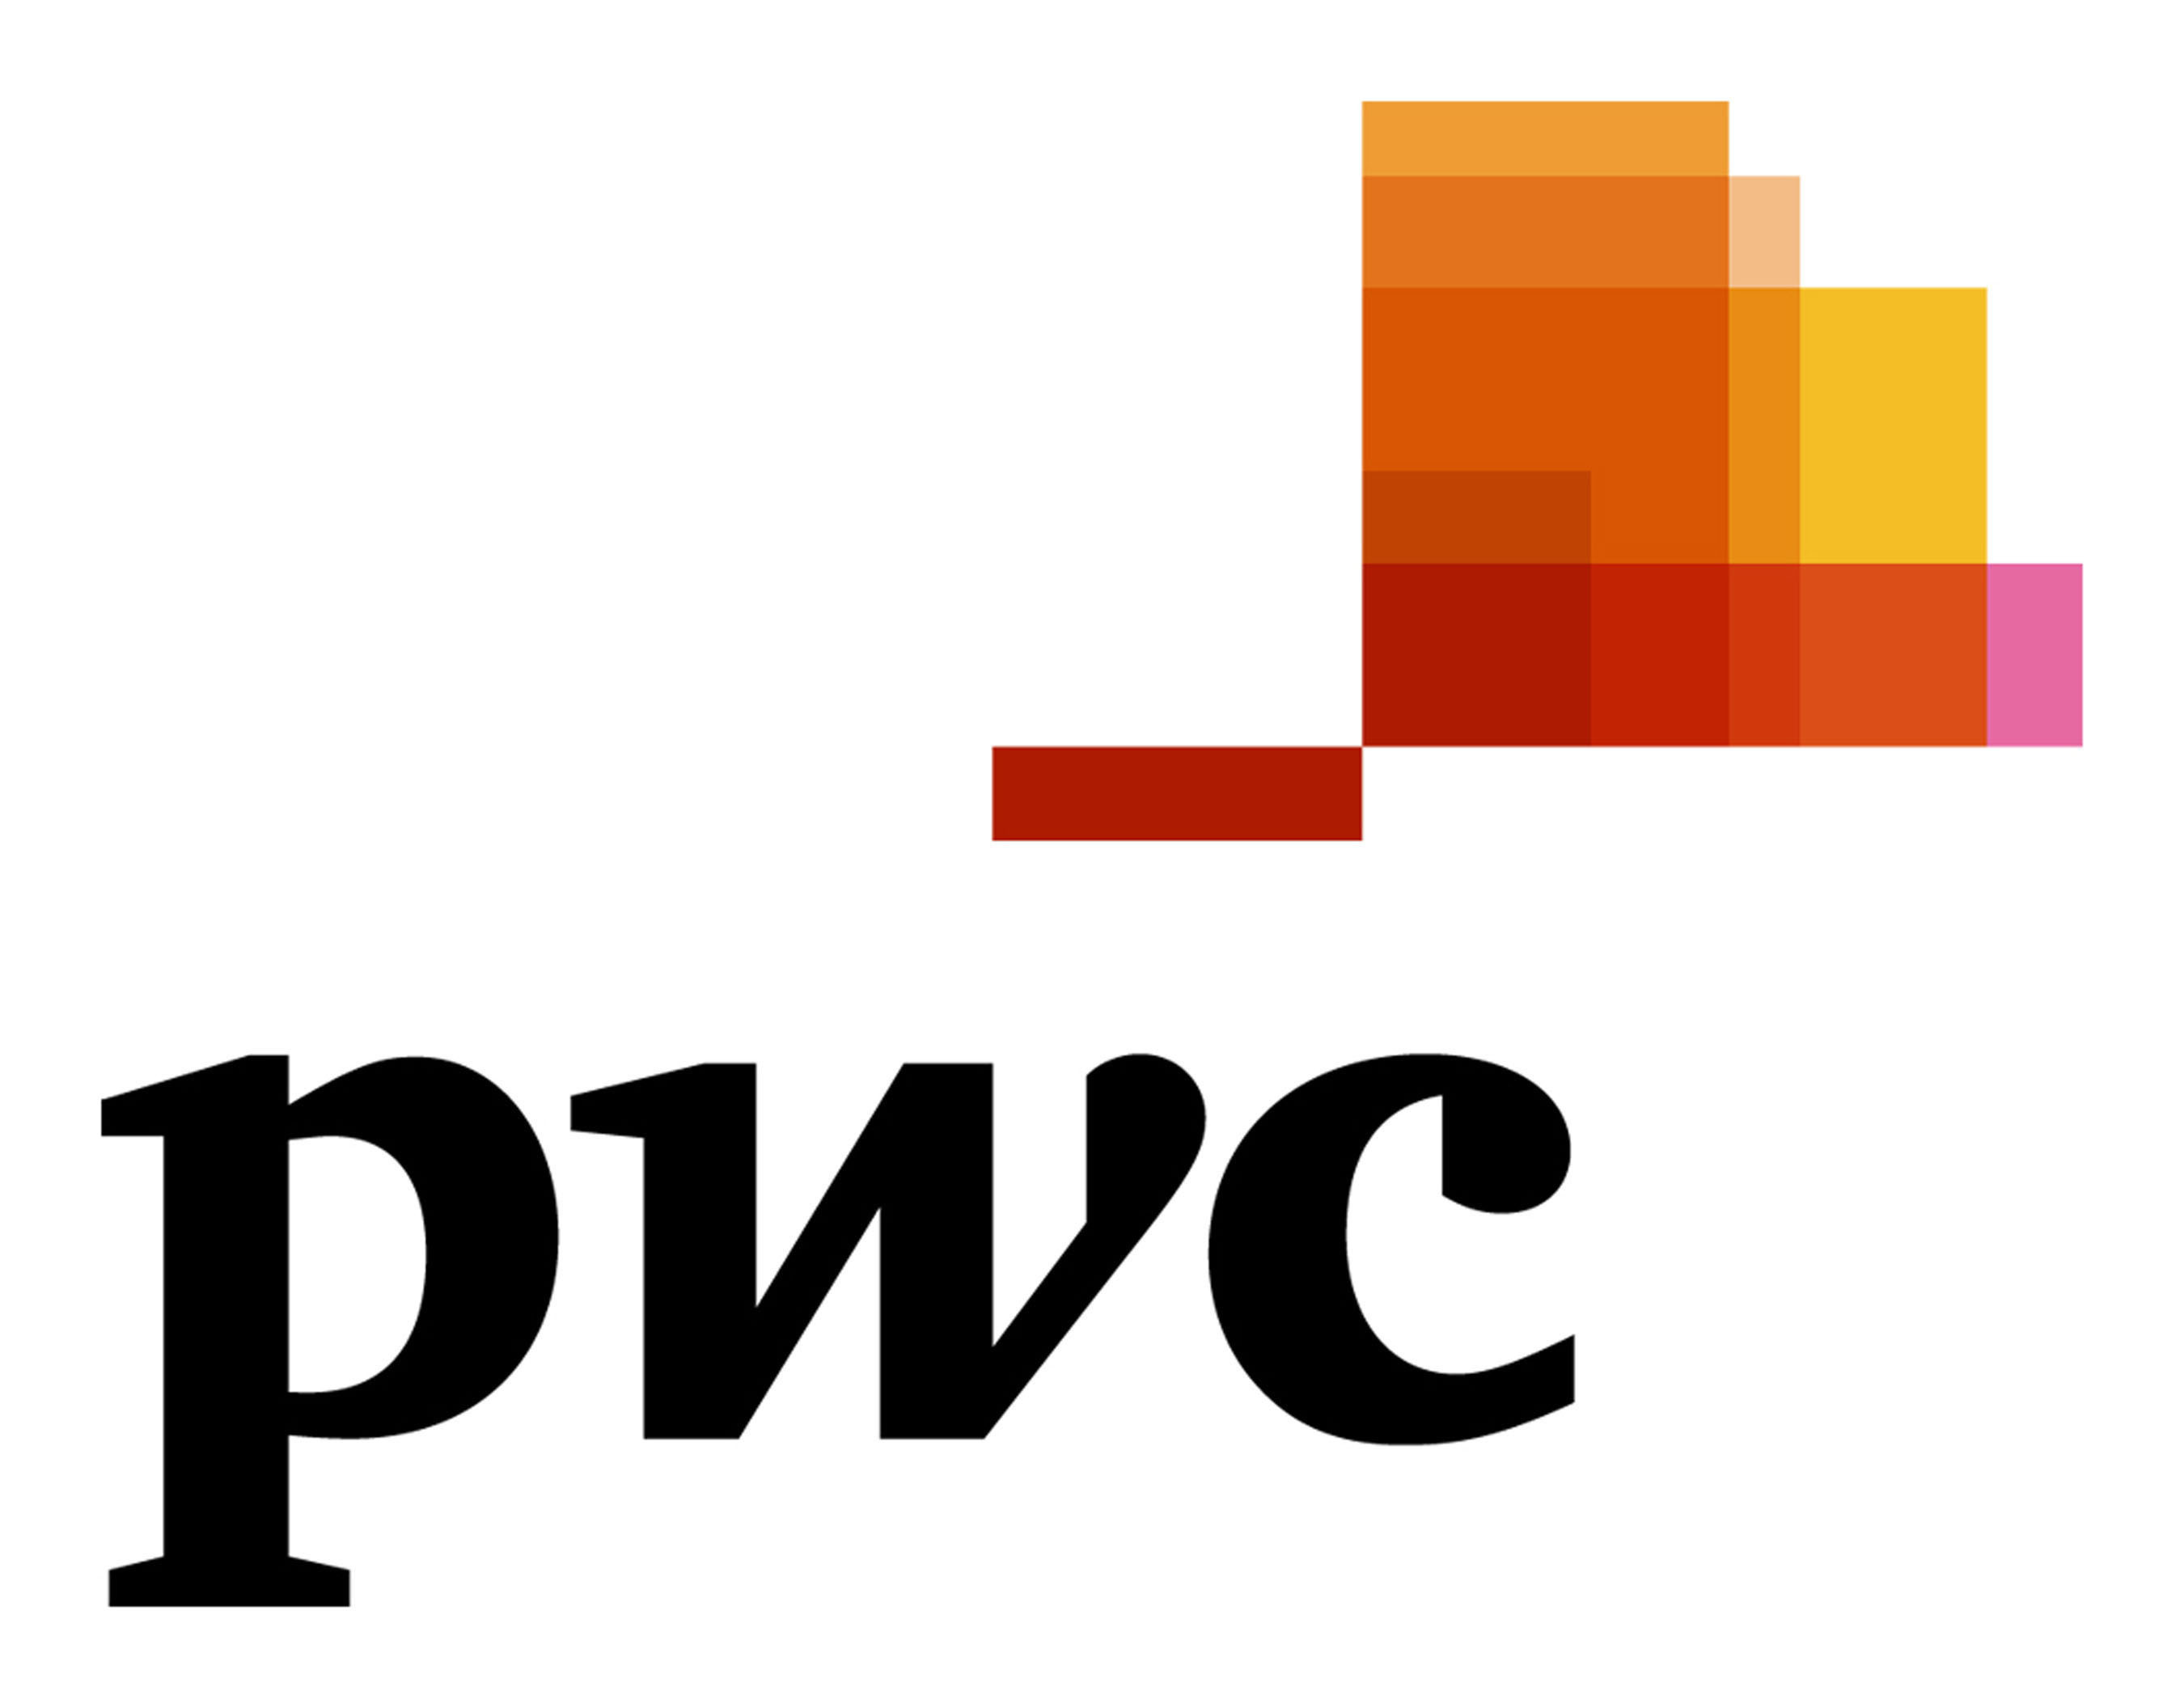 PwC logo. (PRNewsFoto/PwC) (PRNewsFoto/)